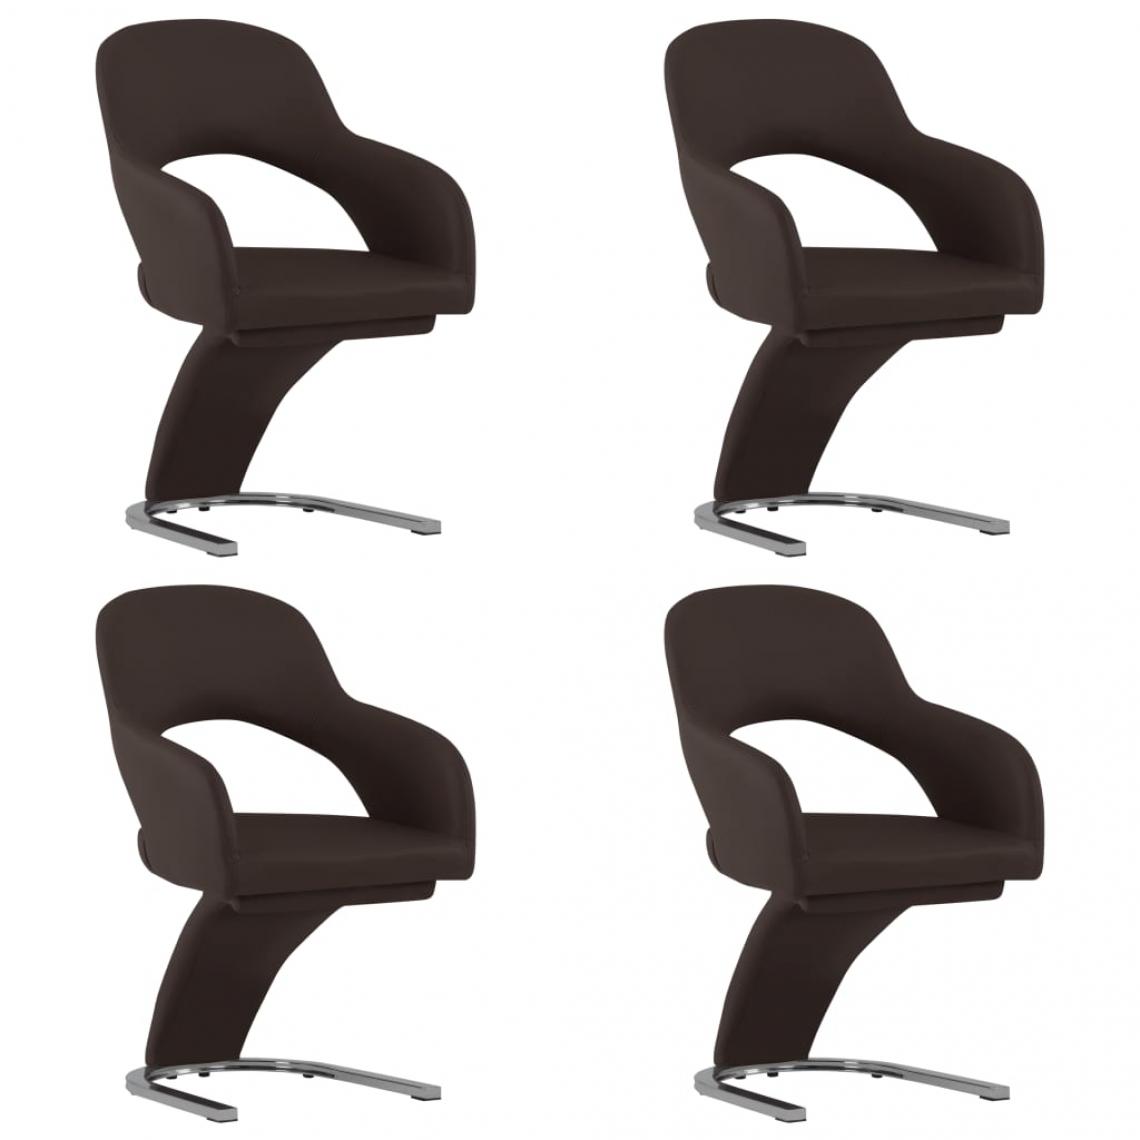 Decoshop26 - Lot de 4 chaises de salle à manger cuisine design moderne similicuir marron CDS021722 - Chaises